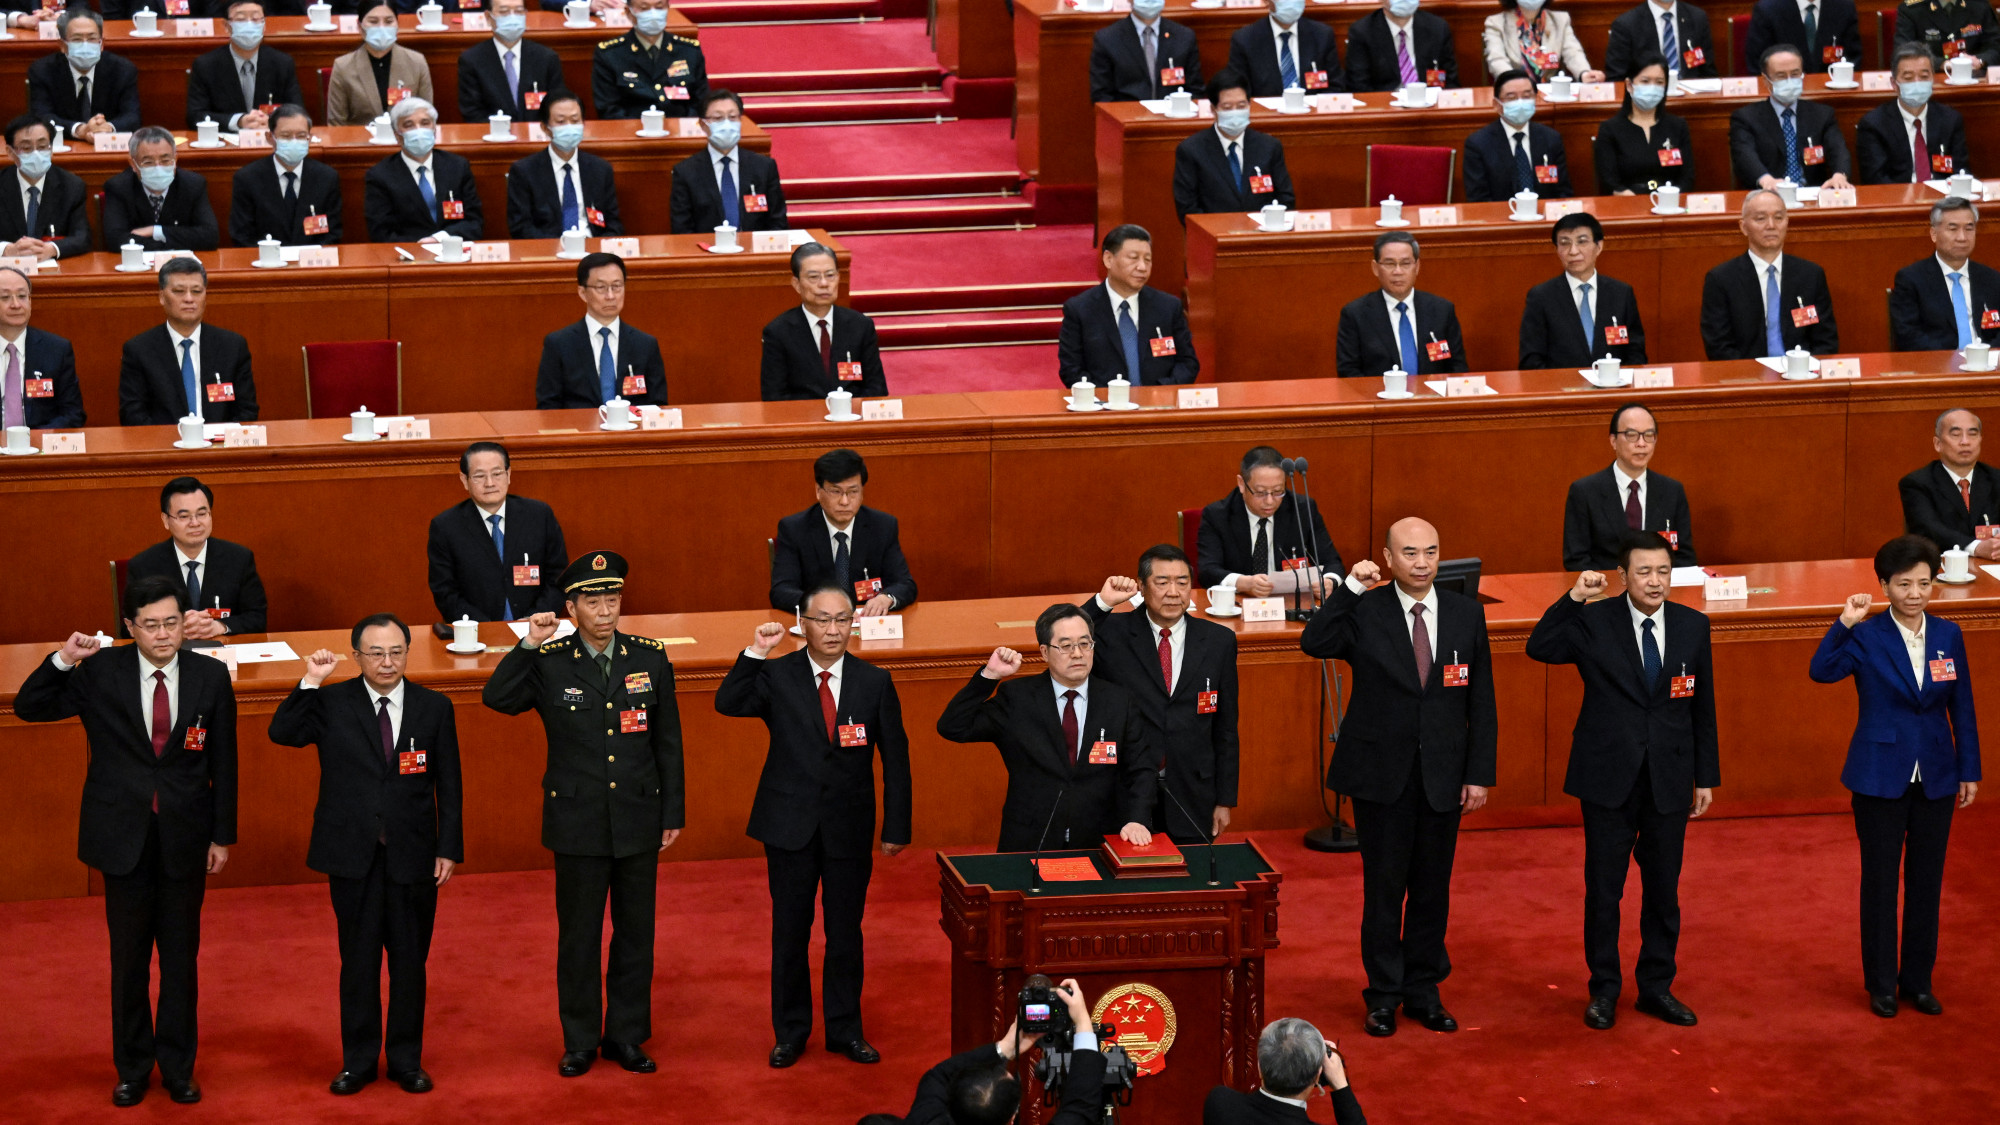 Középen, a pulpitusnál Ding Hszusziang, az egyik új miniszterelnök-helyettes (nem a legbizalmasabb) teszi le az esküt a többi miniszterelnök-helyettes társaságában.